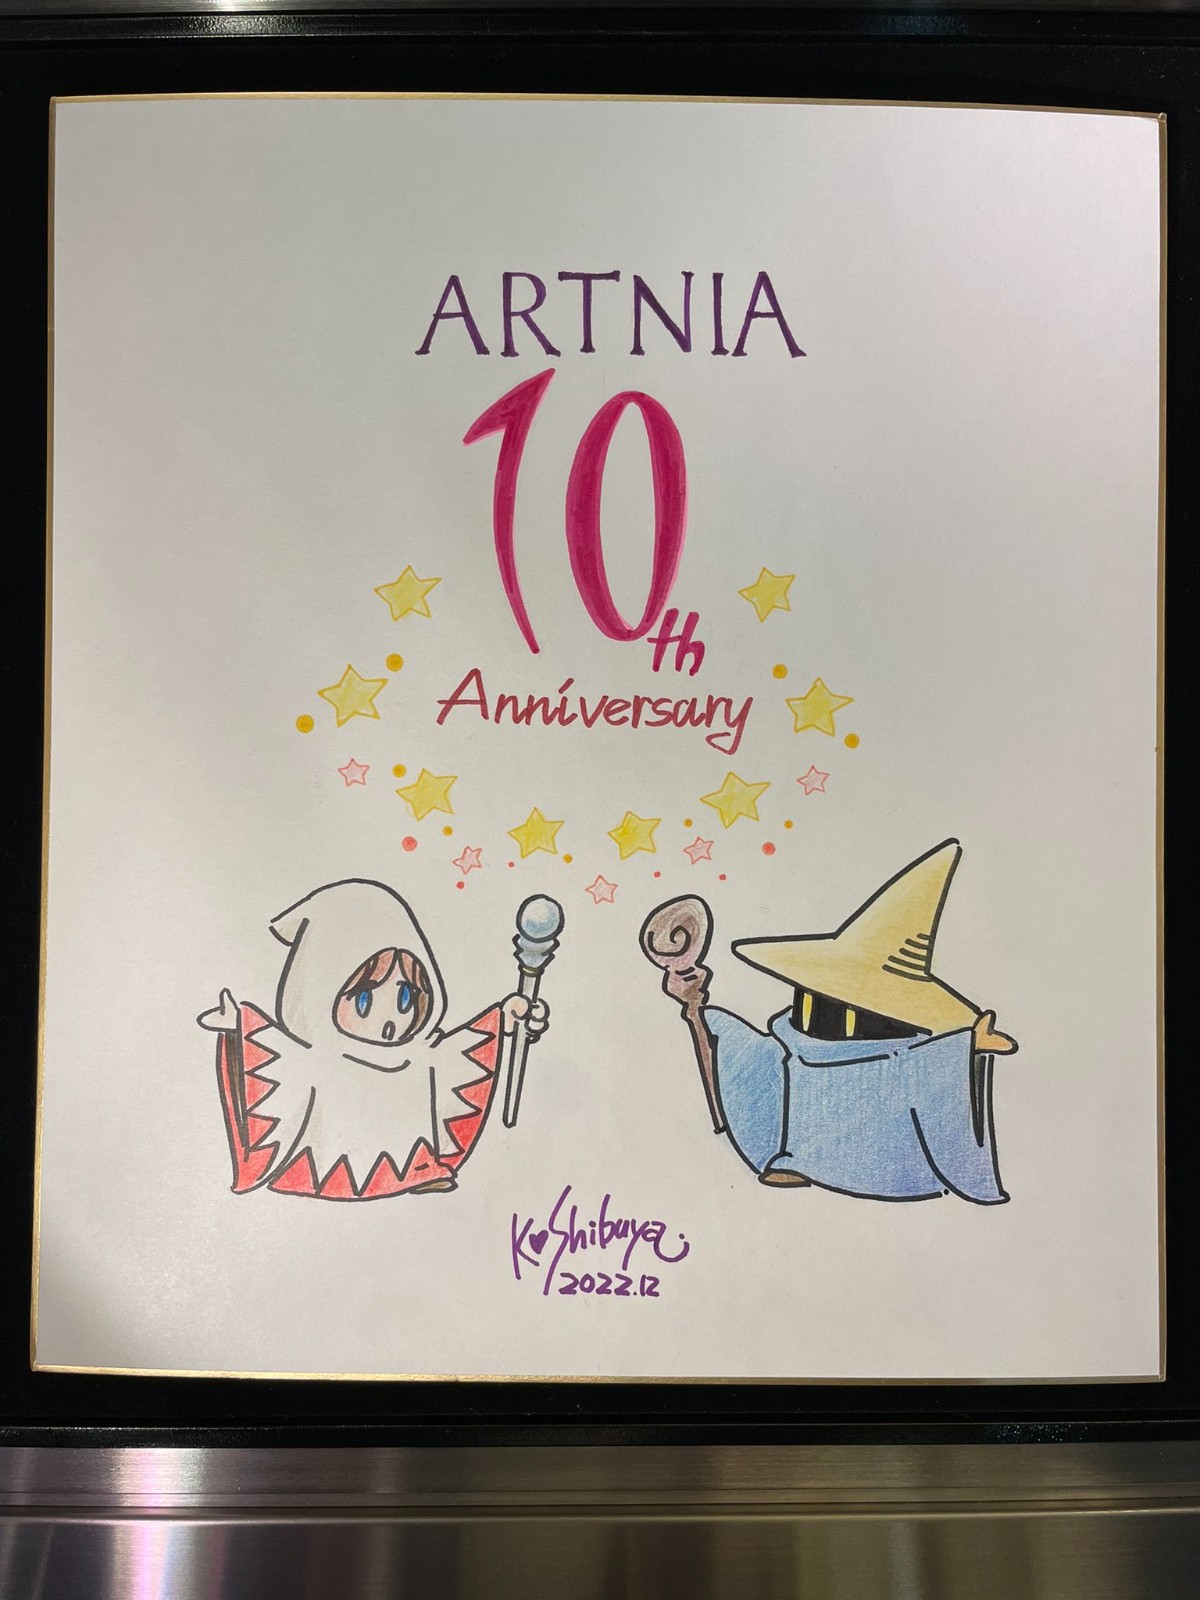 SE咖啡厅Artnia十周年店庆 野村哲也发布祝贺作品 二次世界 第3张